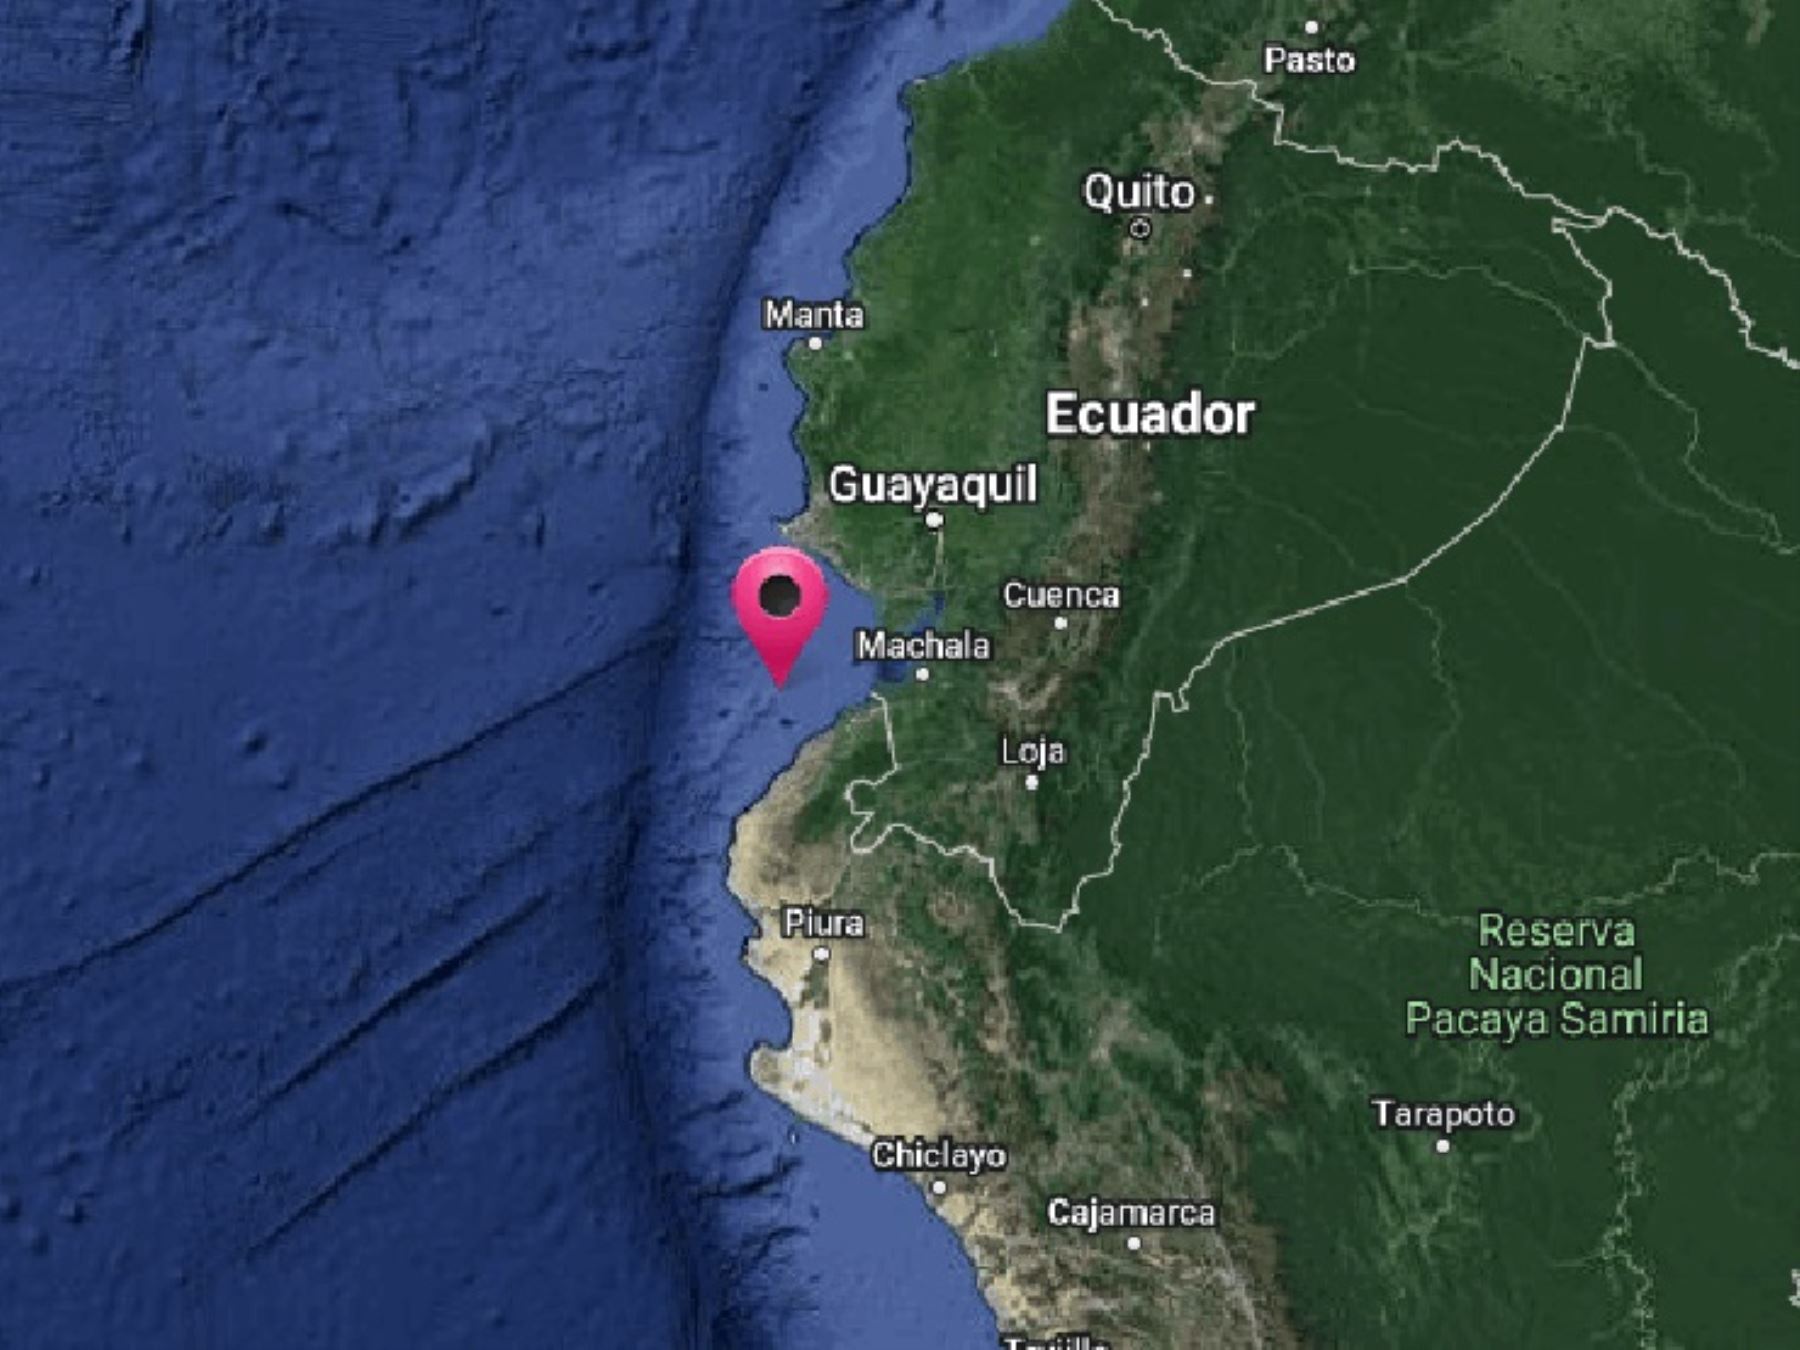 Un temblor de magnitud 4.3 se registró esta madrugada en Tumbes. El epicentro se localizó cerca de la localidad de Zorritos. Foto: ANDINA/difusión.